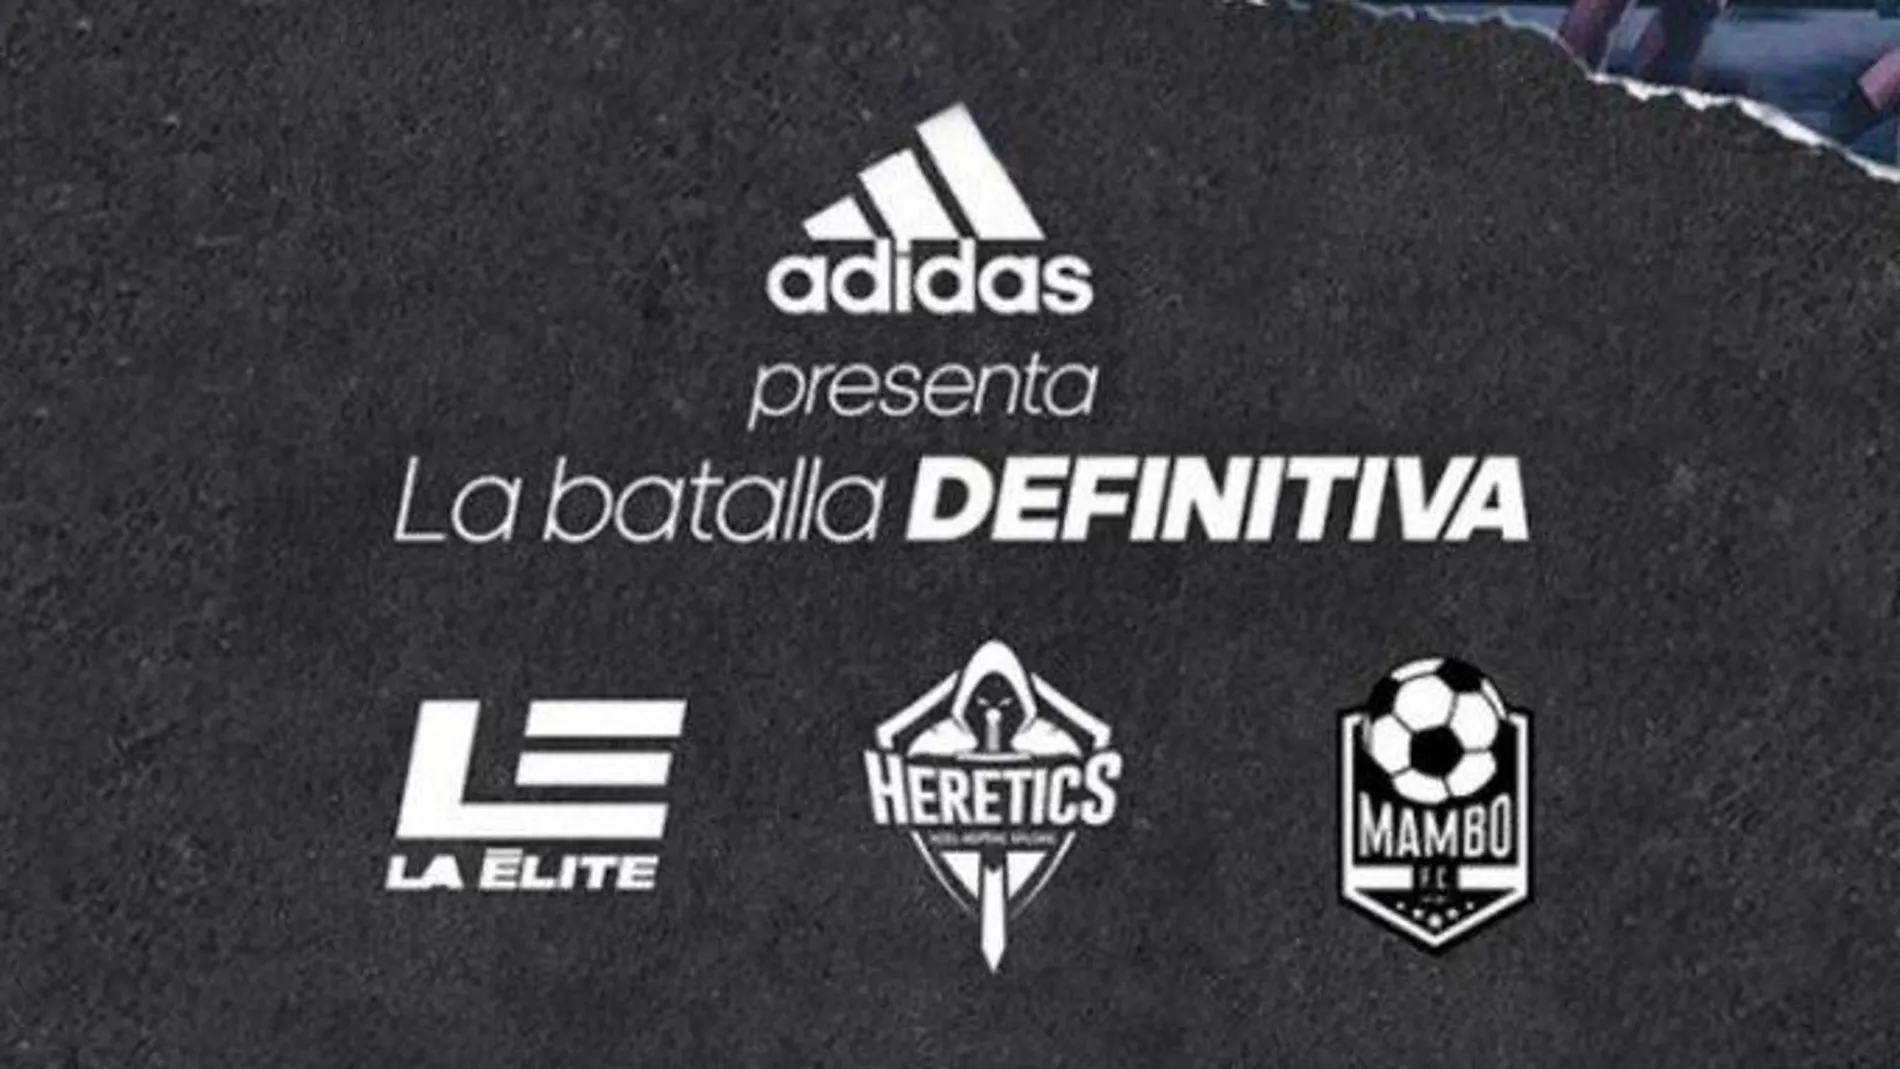 Adidas presenta la Batalla Definitiva